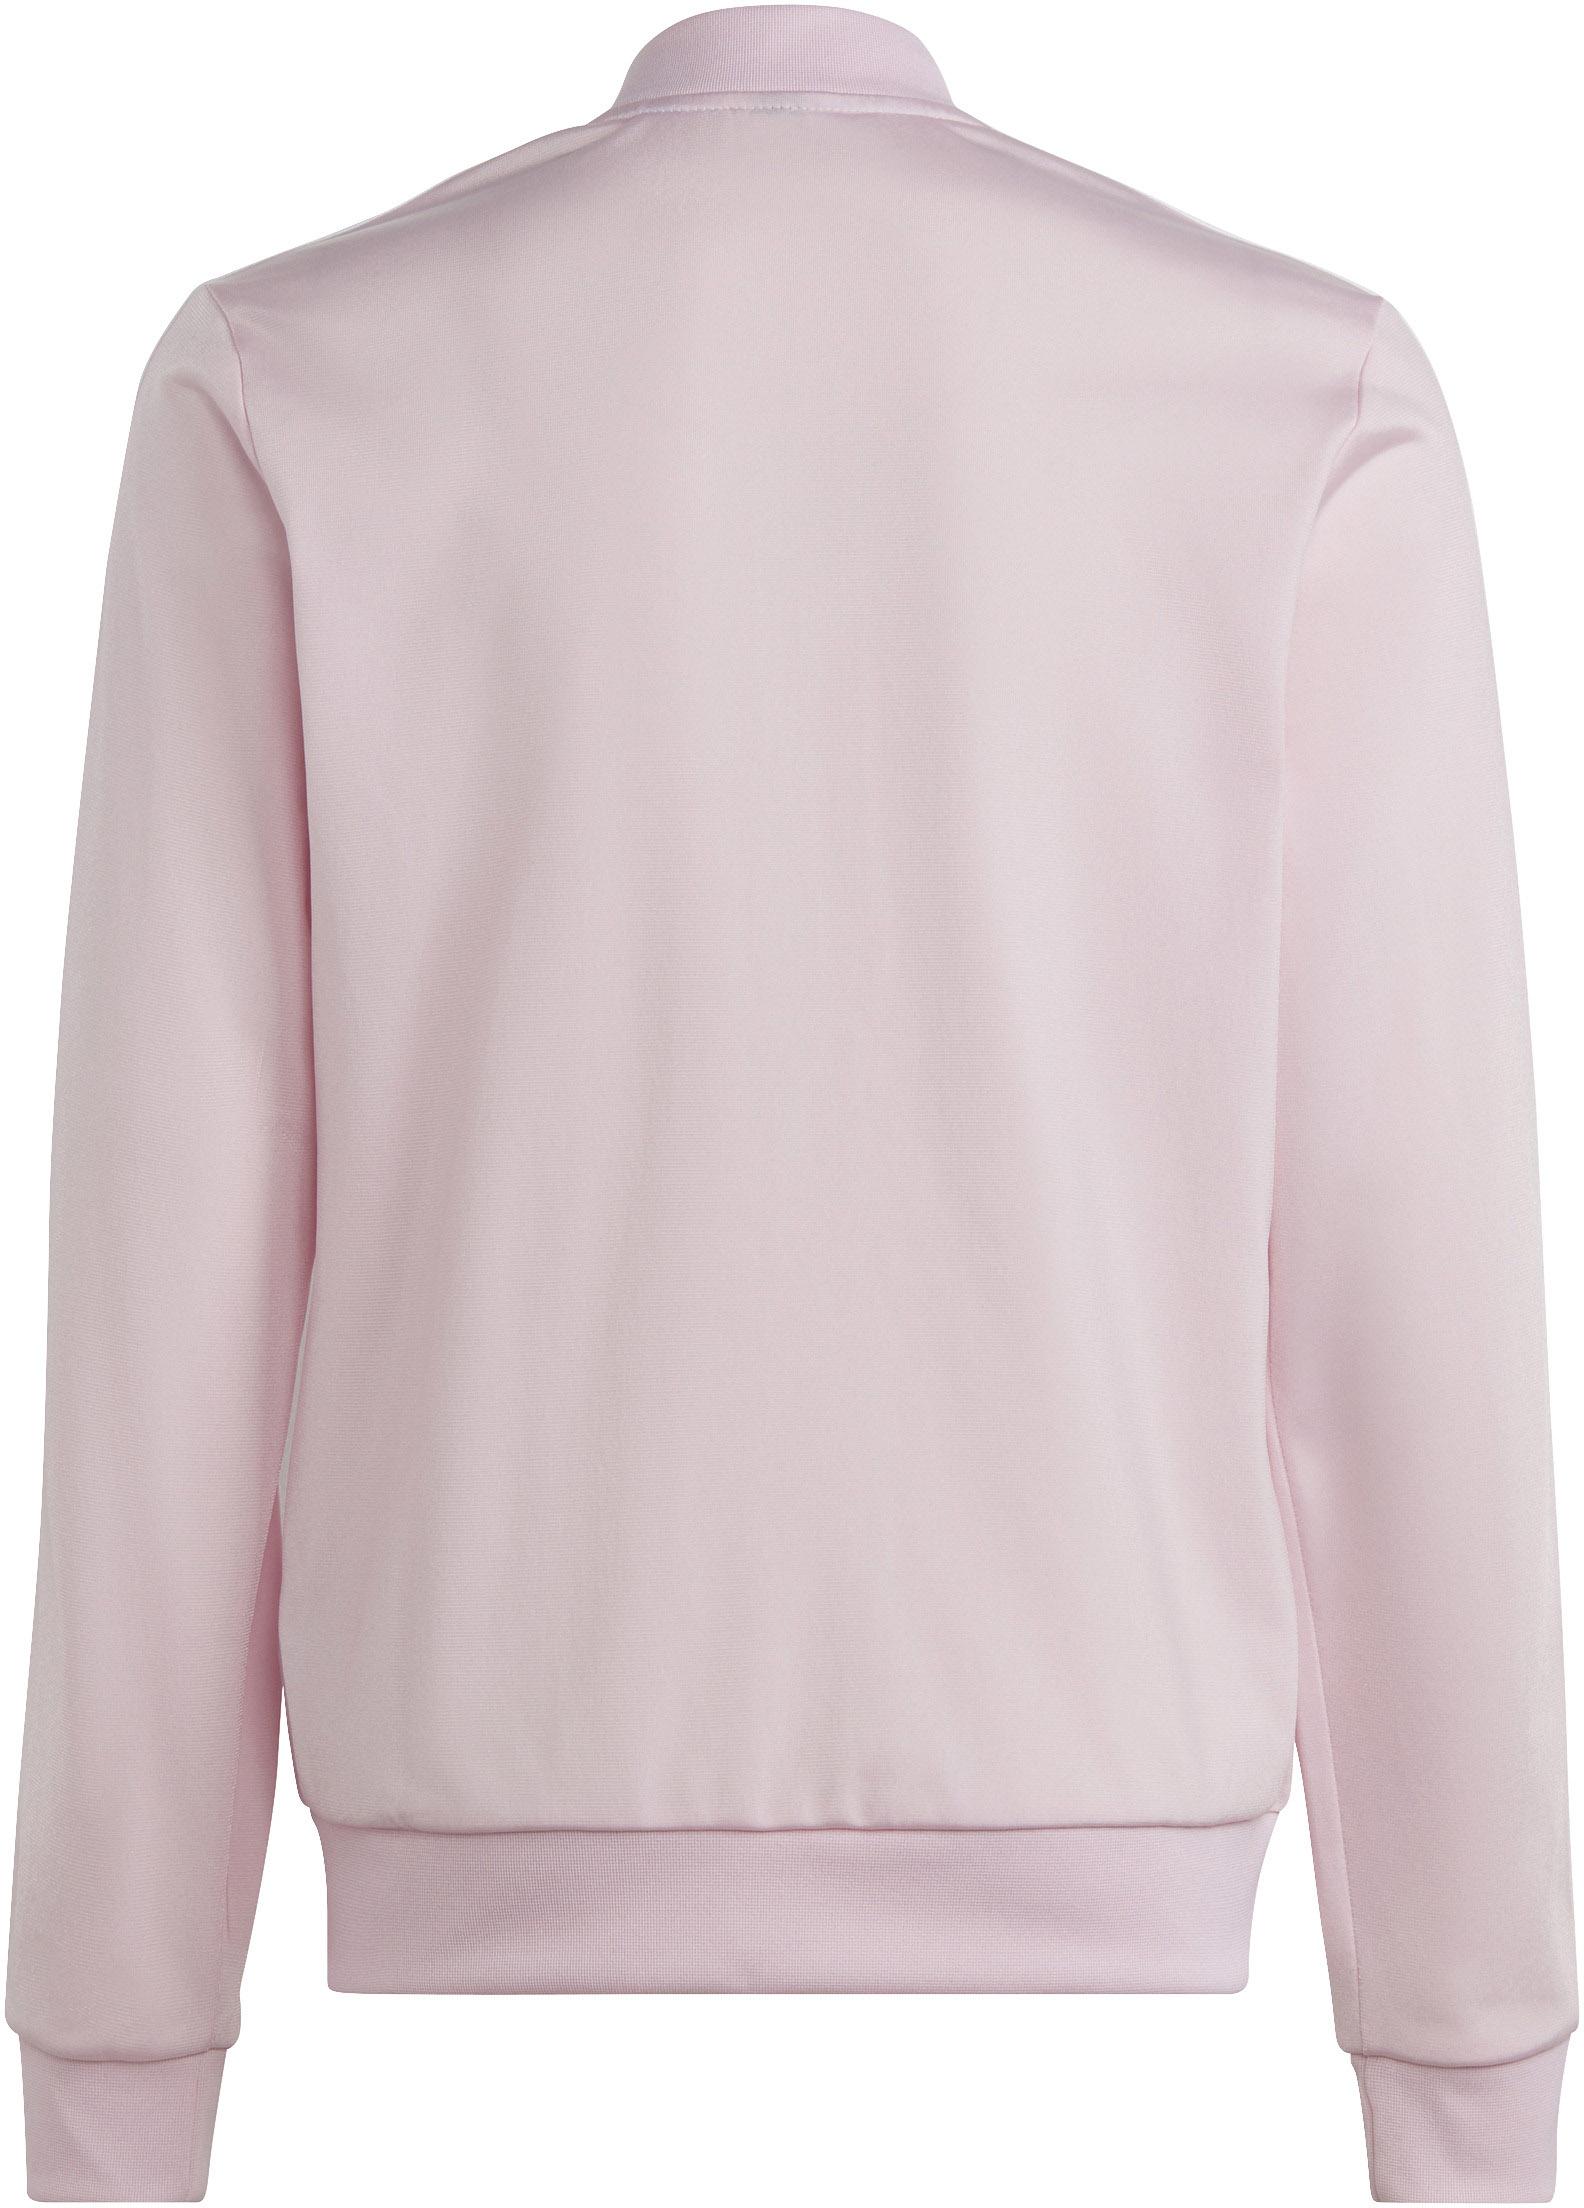 Adidas Trainingsanzug Mädchen clear pink-semi Online Shop kaufen im lucid SportScheck von fuchsia-white